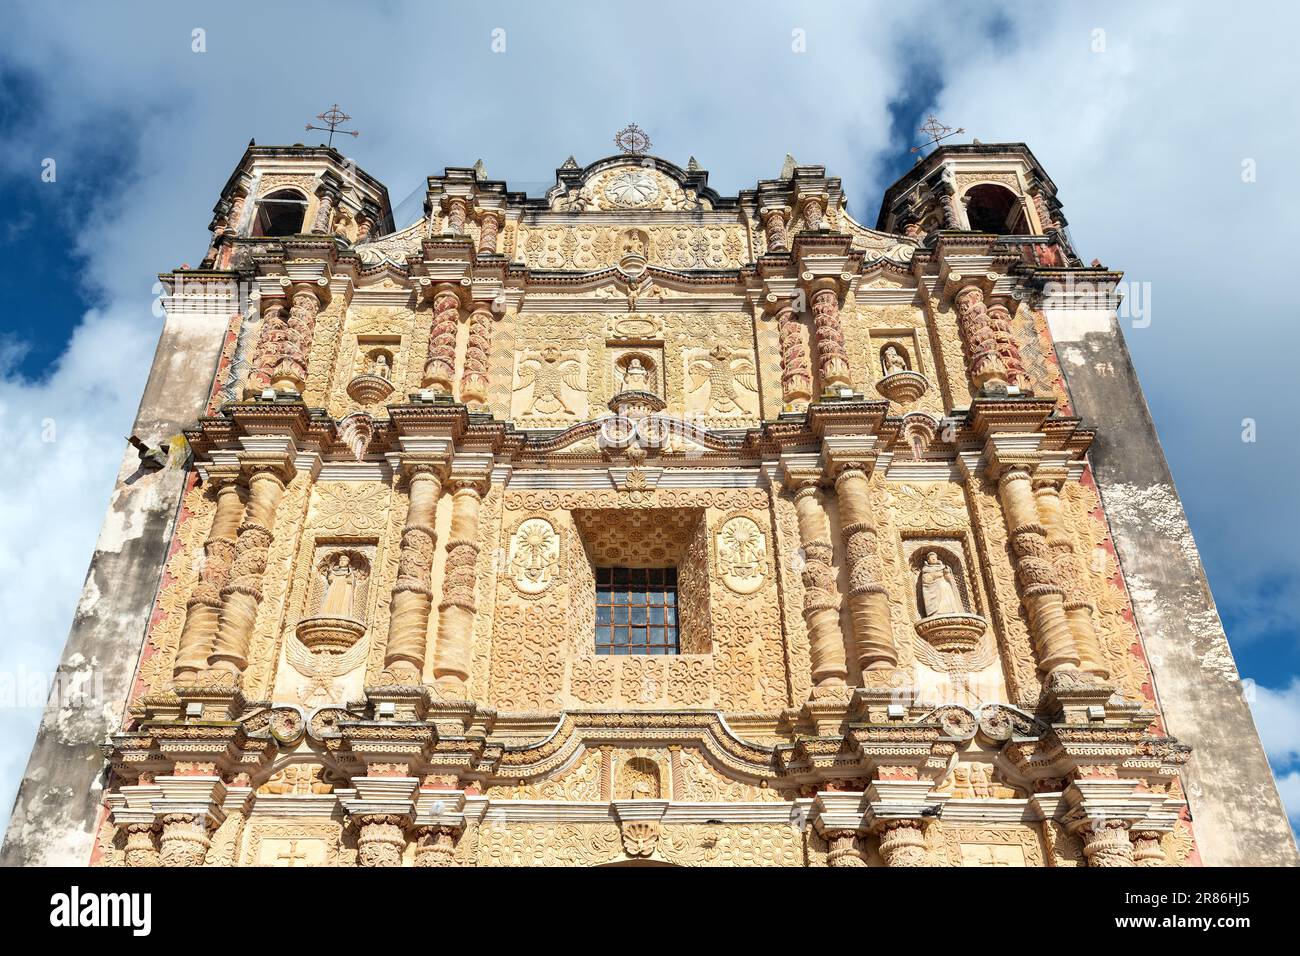 Santo Domingo baroque style church facade, San Cristobal de las Casas, Chiapas, Mexico. Stock Photo